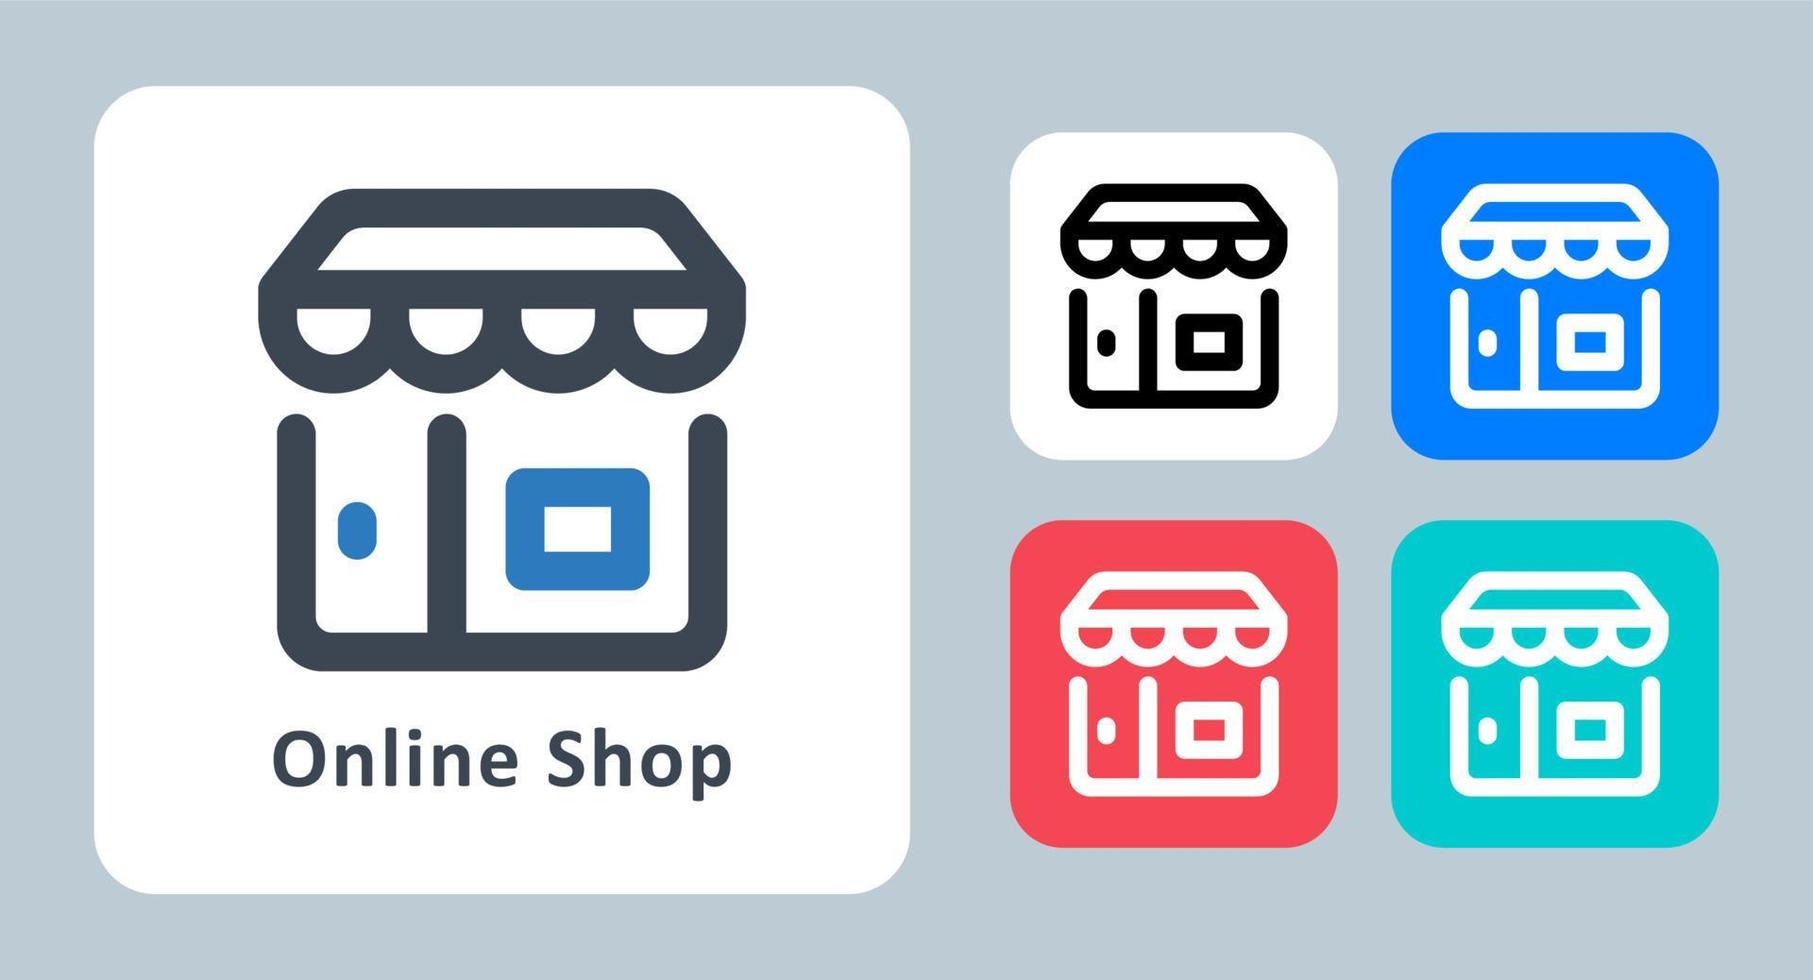 butik ikon - vektor illustration. shoppa, shoppa, lagra, marknadsföra, köpa, sälja, köpa, e-handel, linje, disposition, platt, ikoner.